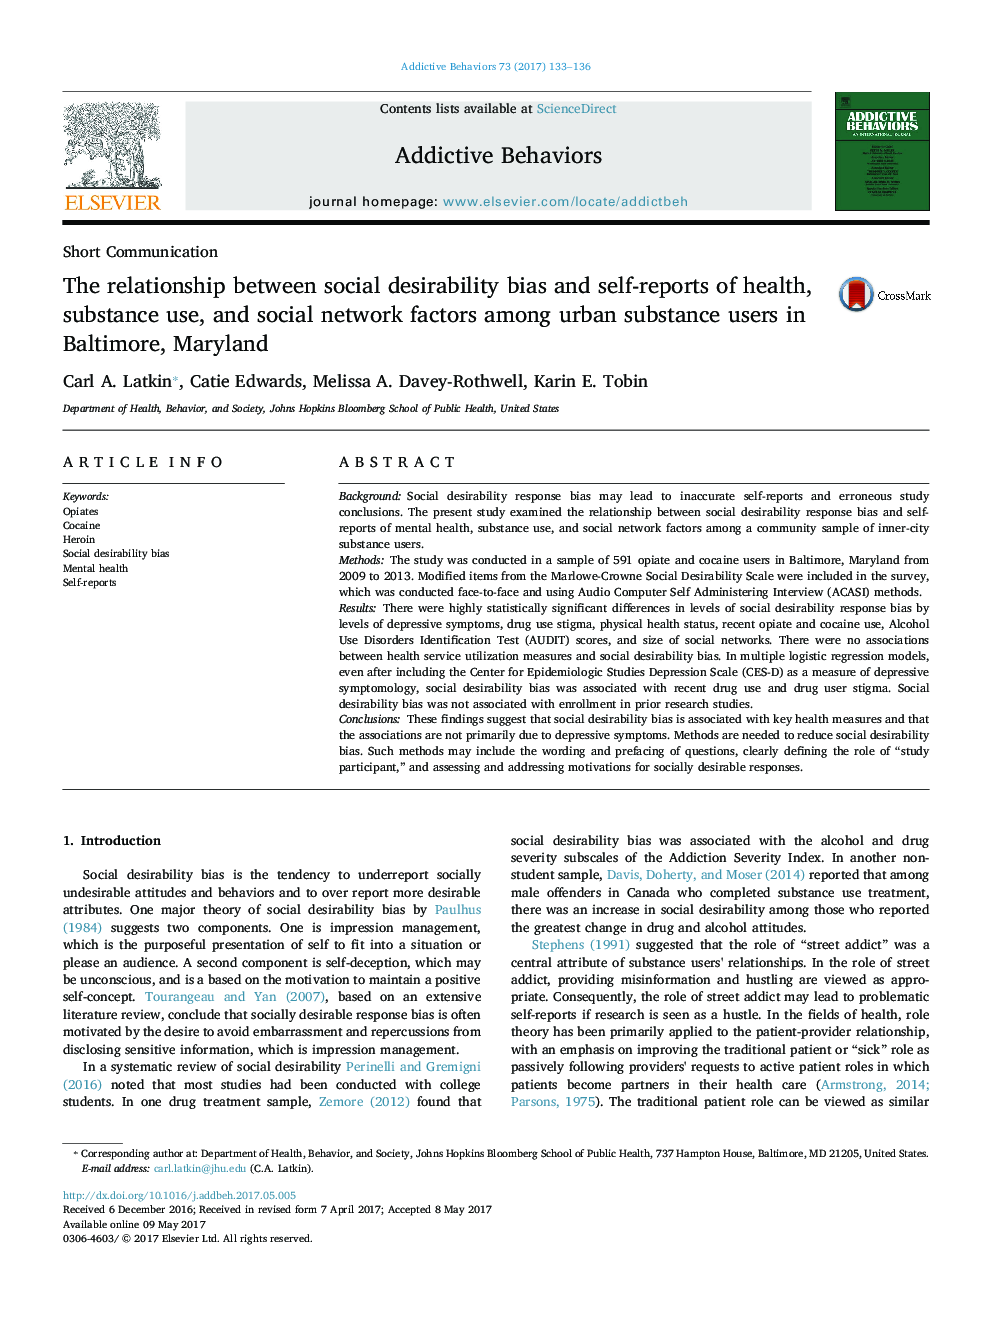 ارتباط بین تعصب مطلوبیت اجتماعی و گزارش خود درباره سلامت، مصرف مواد و عوامل شبکه اجتماعی در میان مصرف کنندگان مواد شهری در بالتیمور، مریلند 